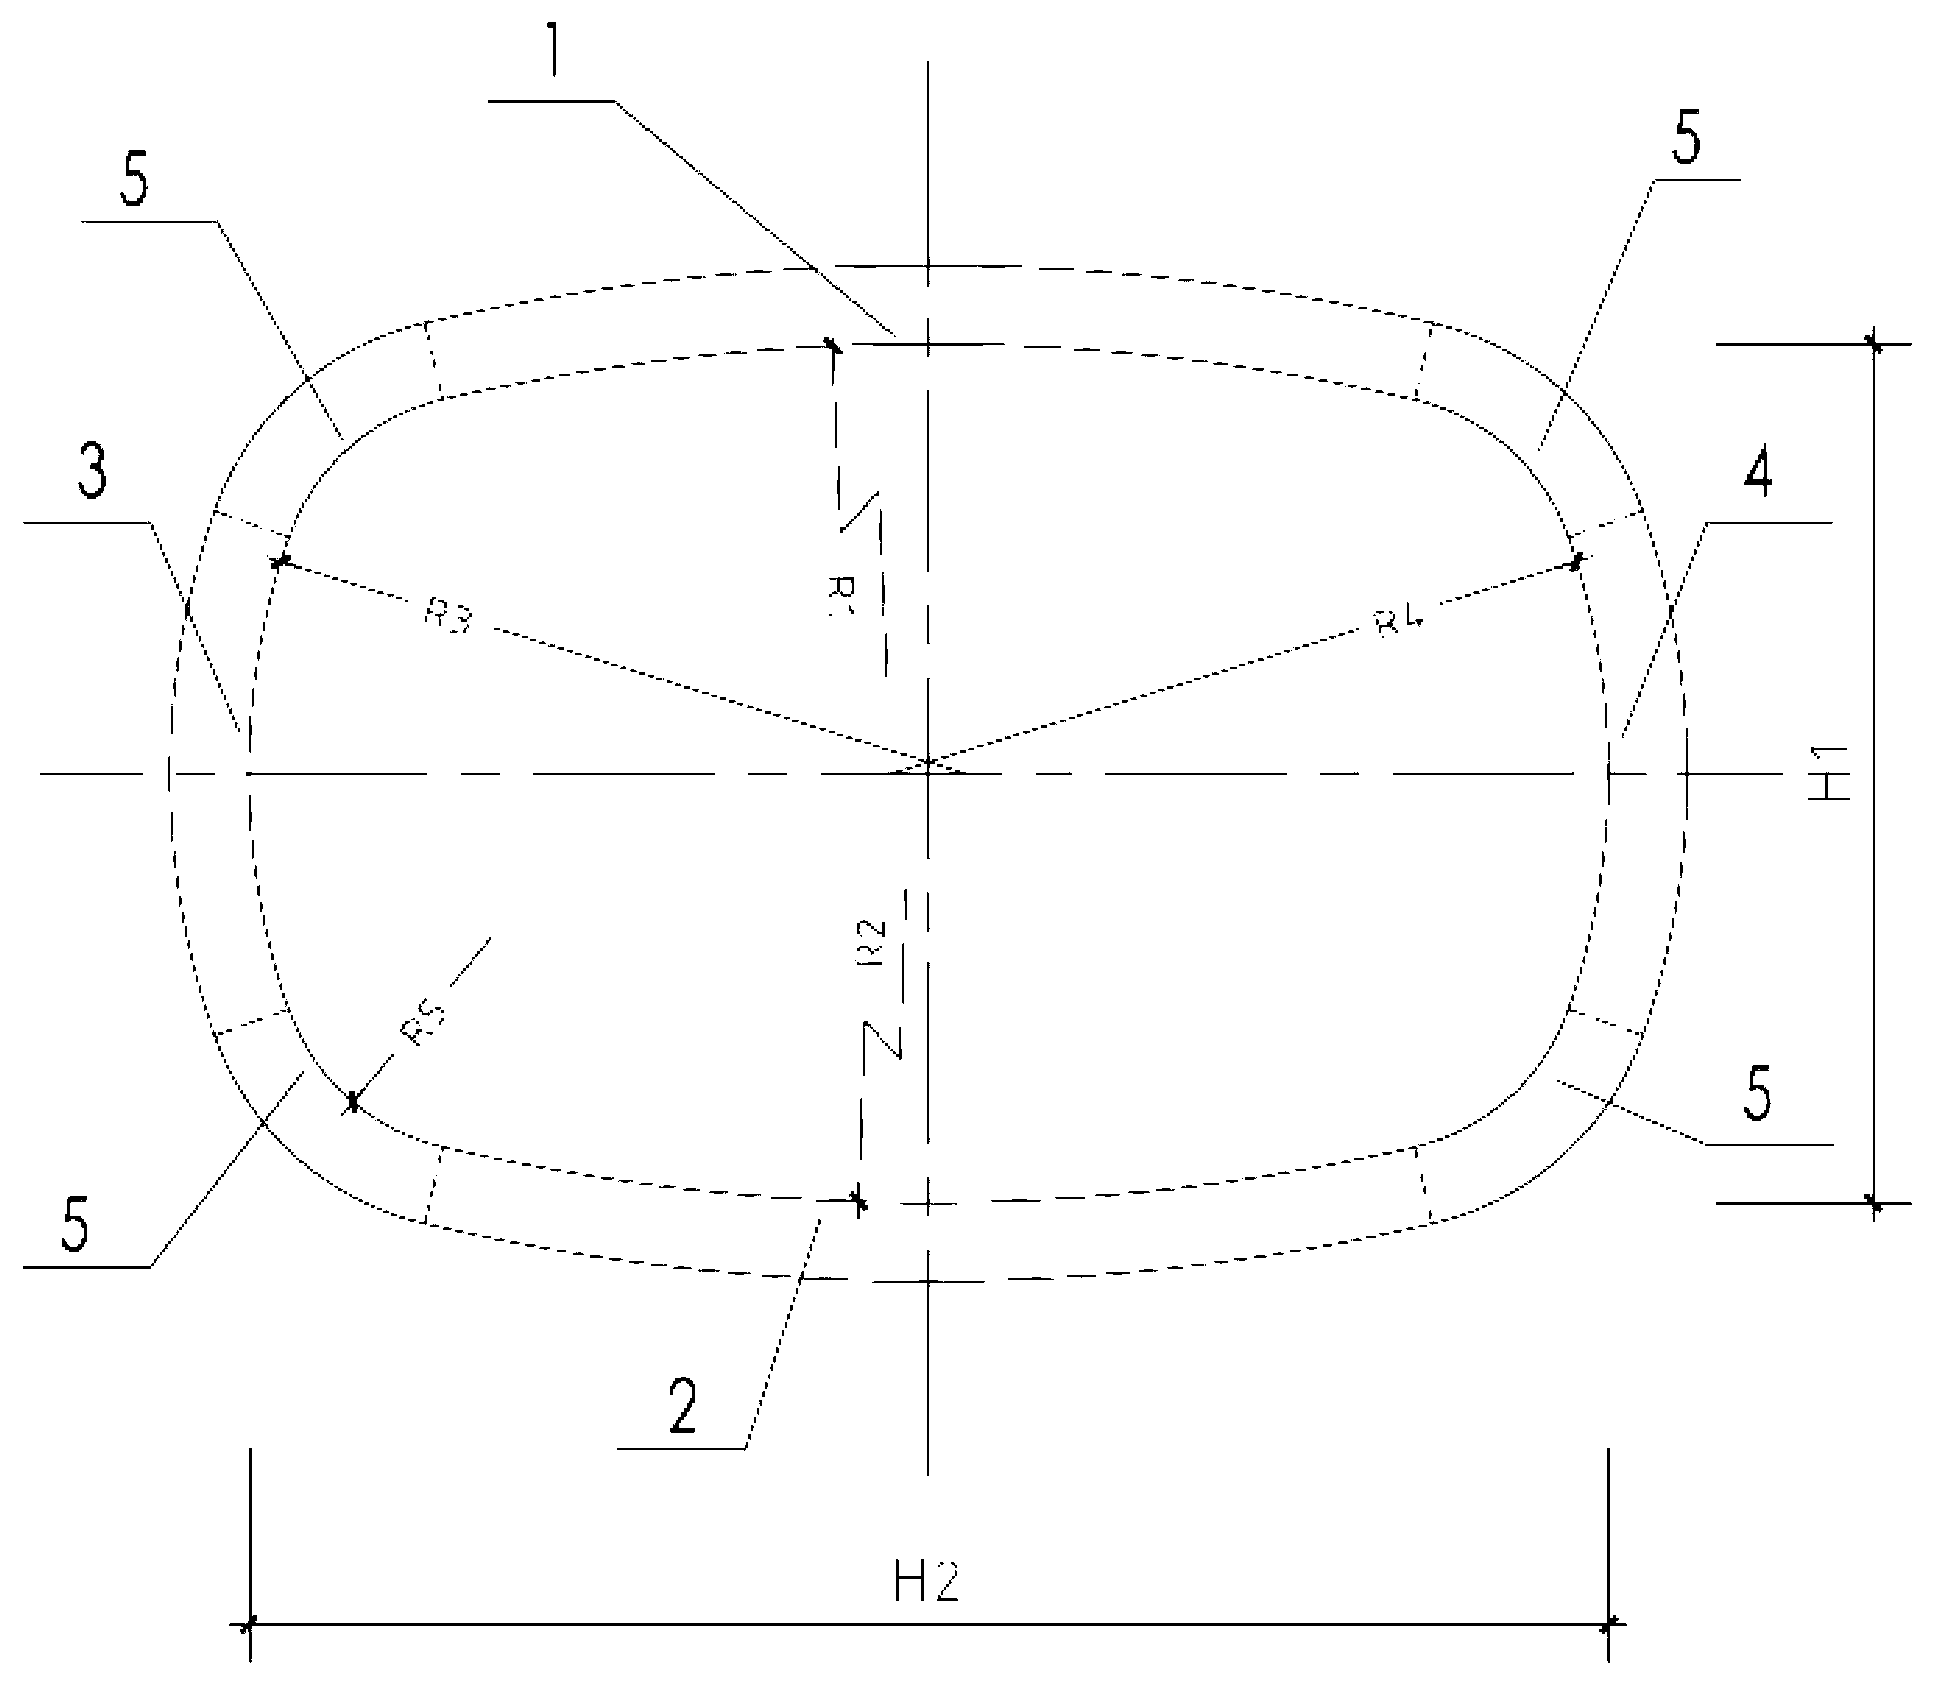 Shield segment structure and shield tunnel